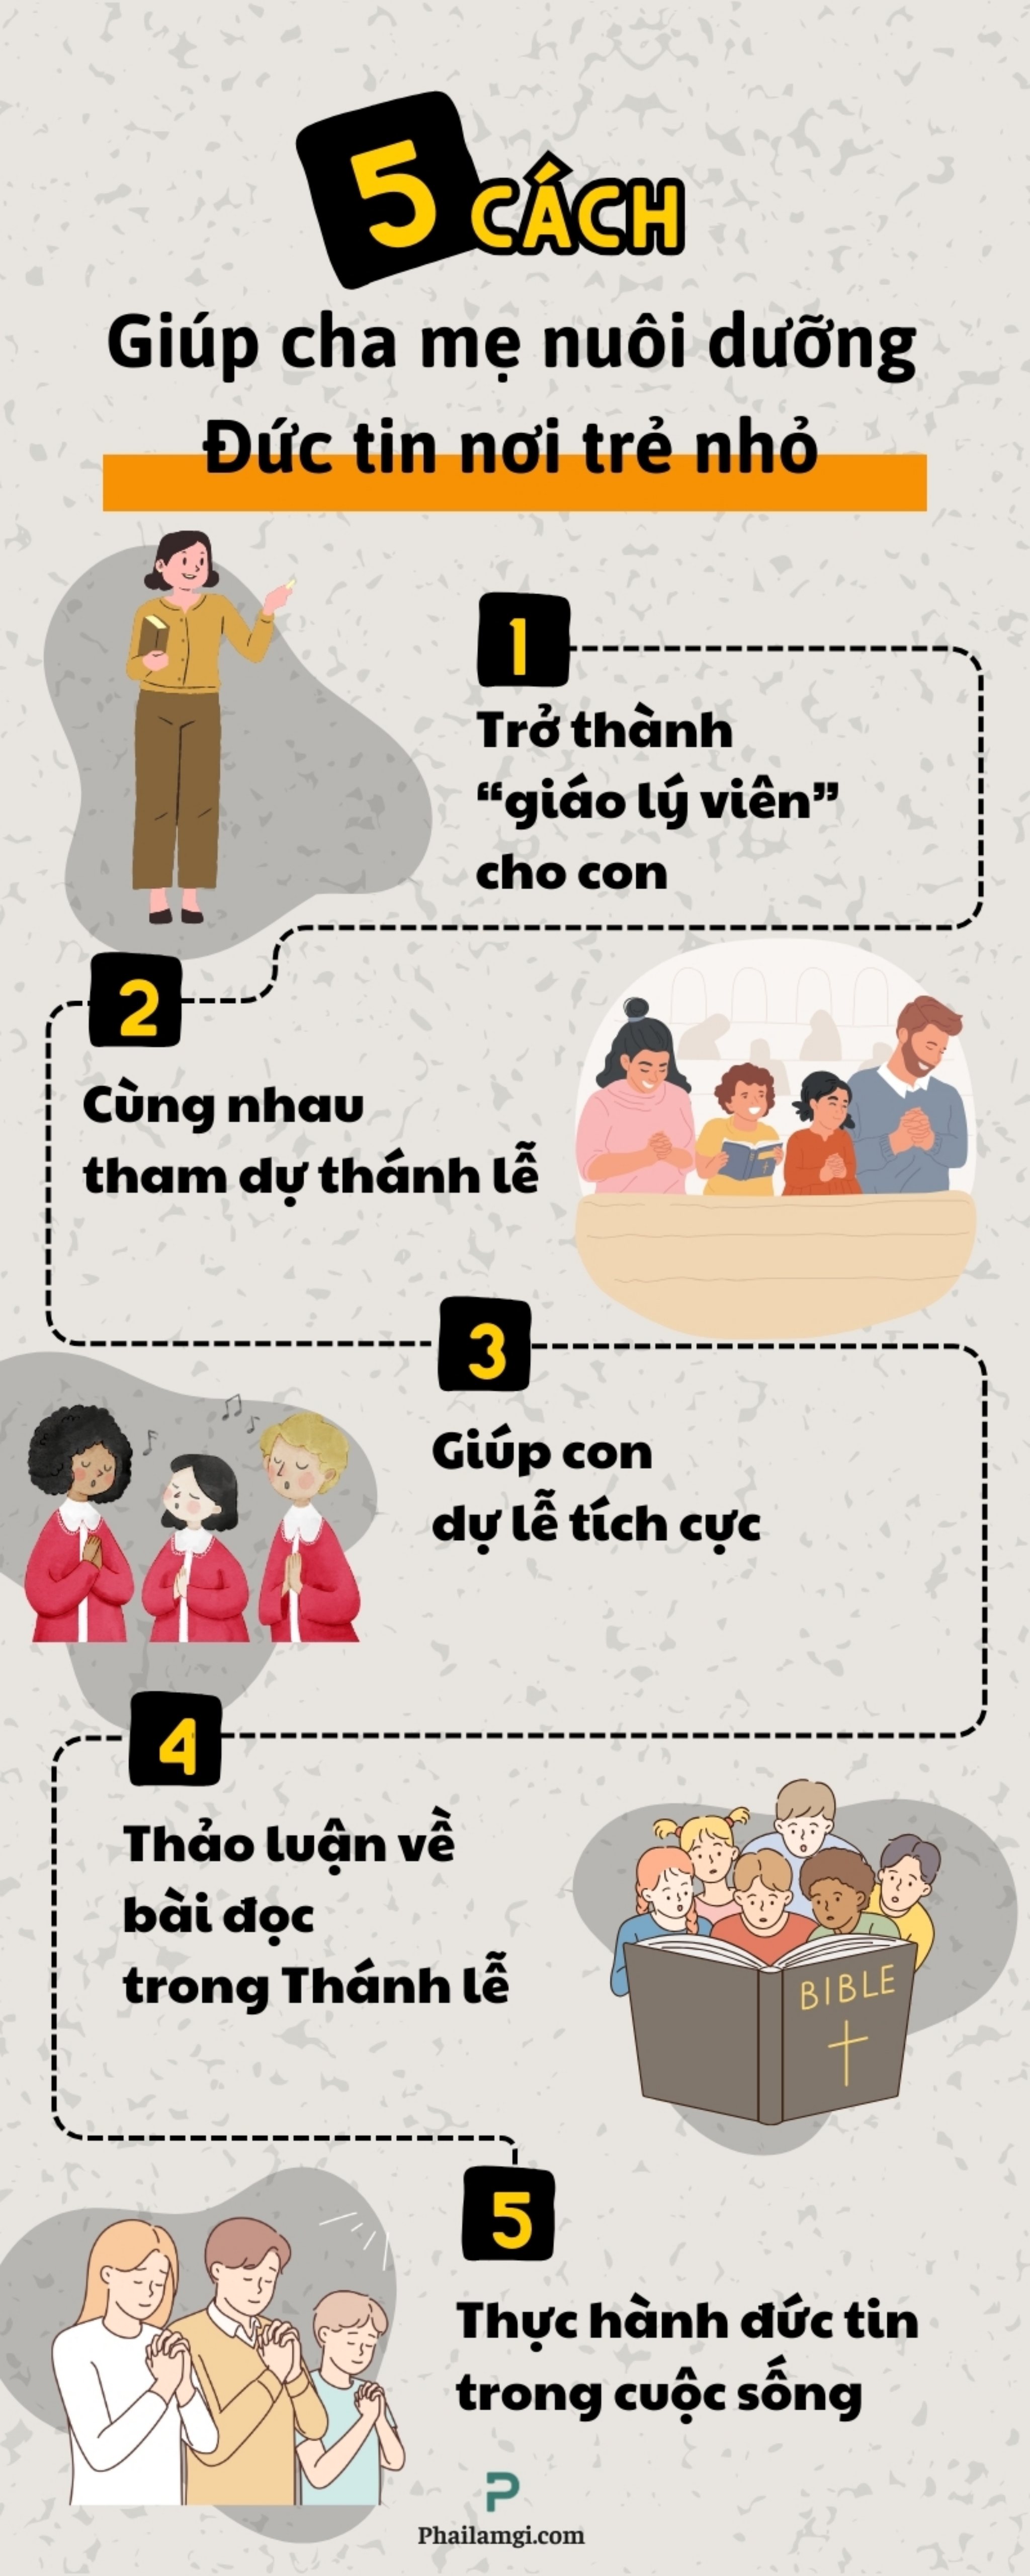 phailamgi_5 cách giúp cha mẹ nuôi dưỡng Đức tin nơi trẻ nhỏ_inforgraphic.jpg